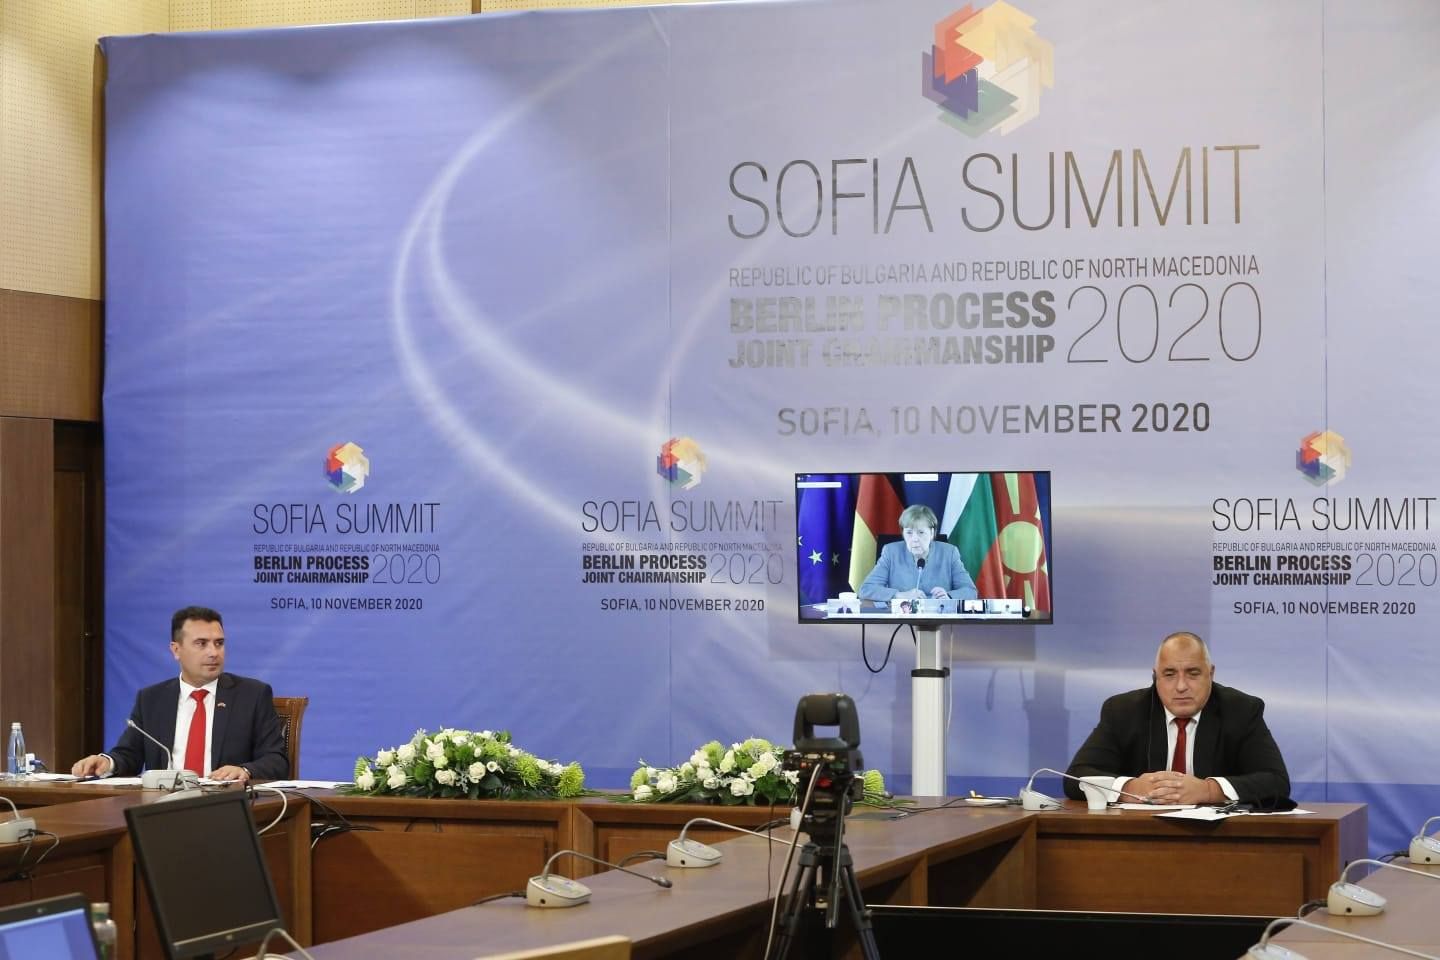 Зоран Заев и Бойко Борисов са домакини на срещата в София, в която Ангела Меркел участва онлайн